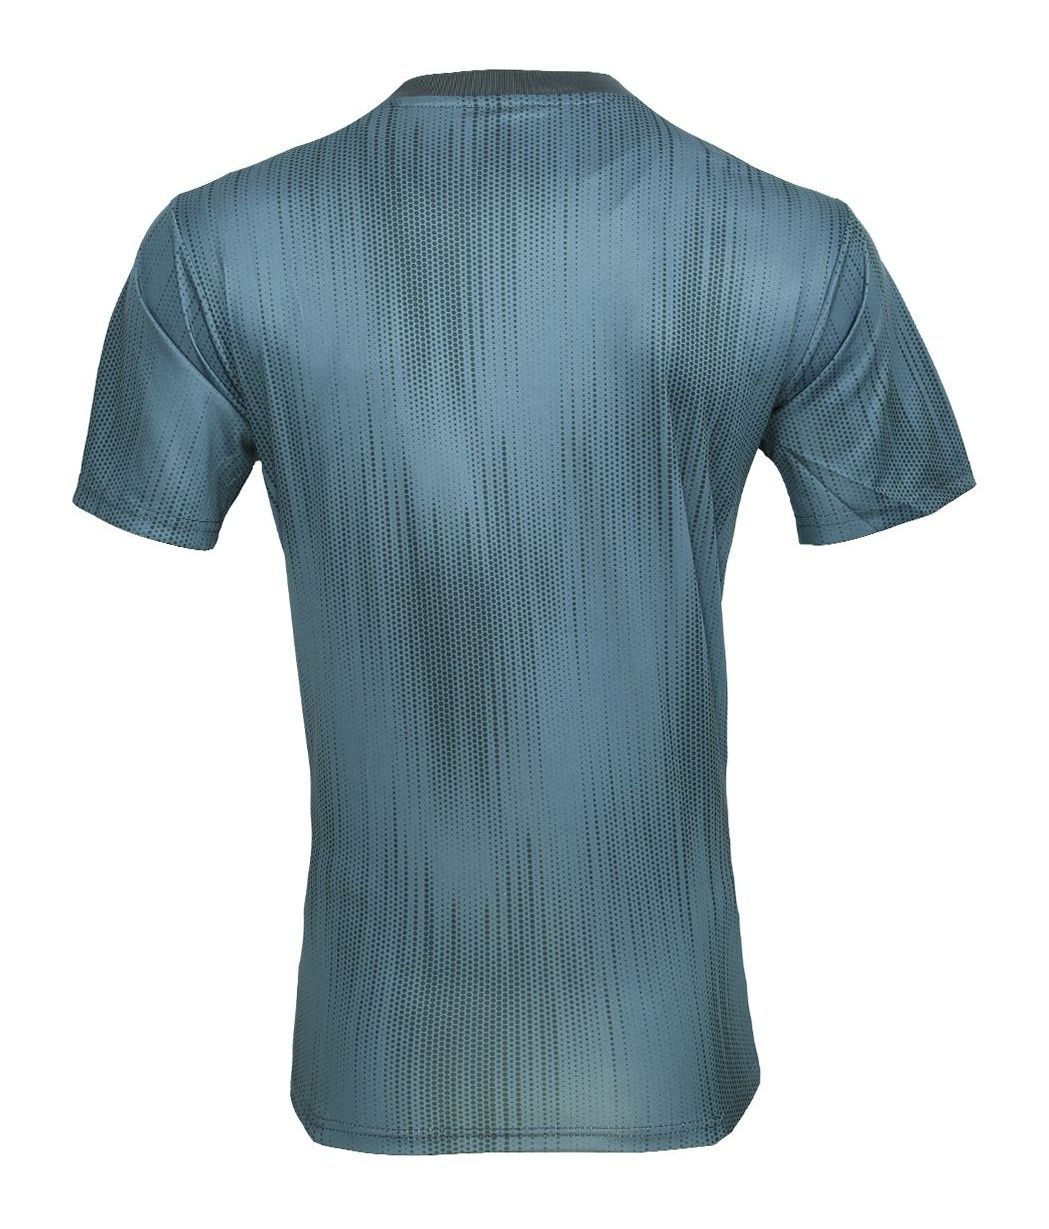 تی شرت ورزشی مردانه طرح بایرن مونیخ 03 مدل 2018-19